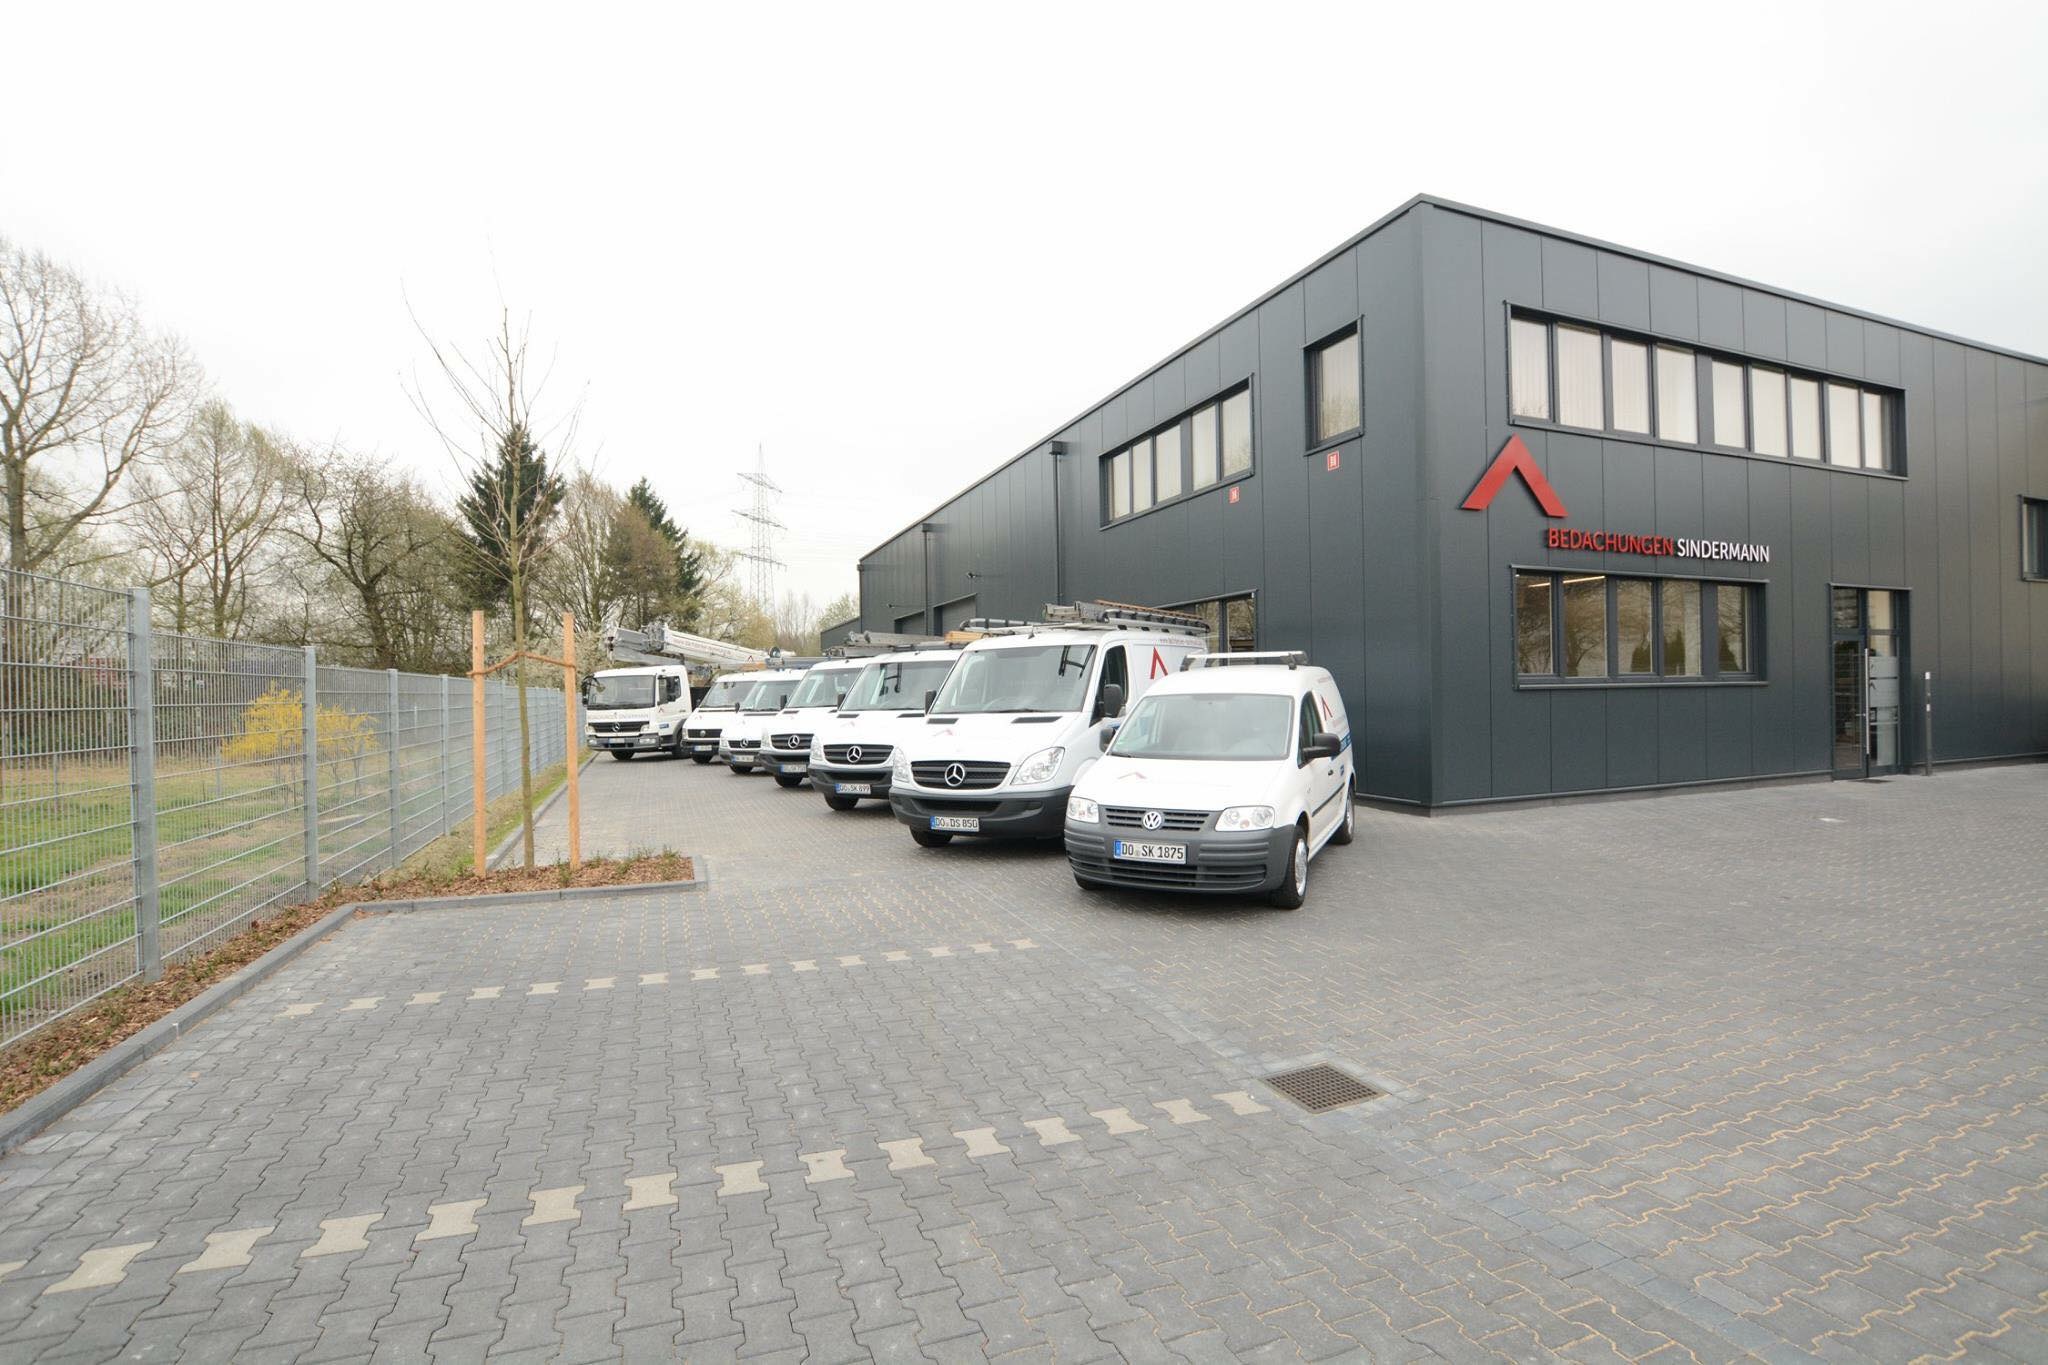 Bild 3 Bedachungen Sindermann GmbH in Dortmund